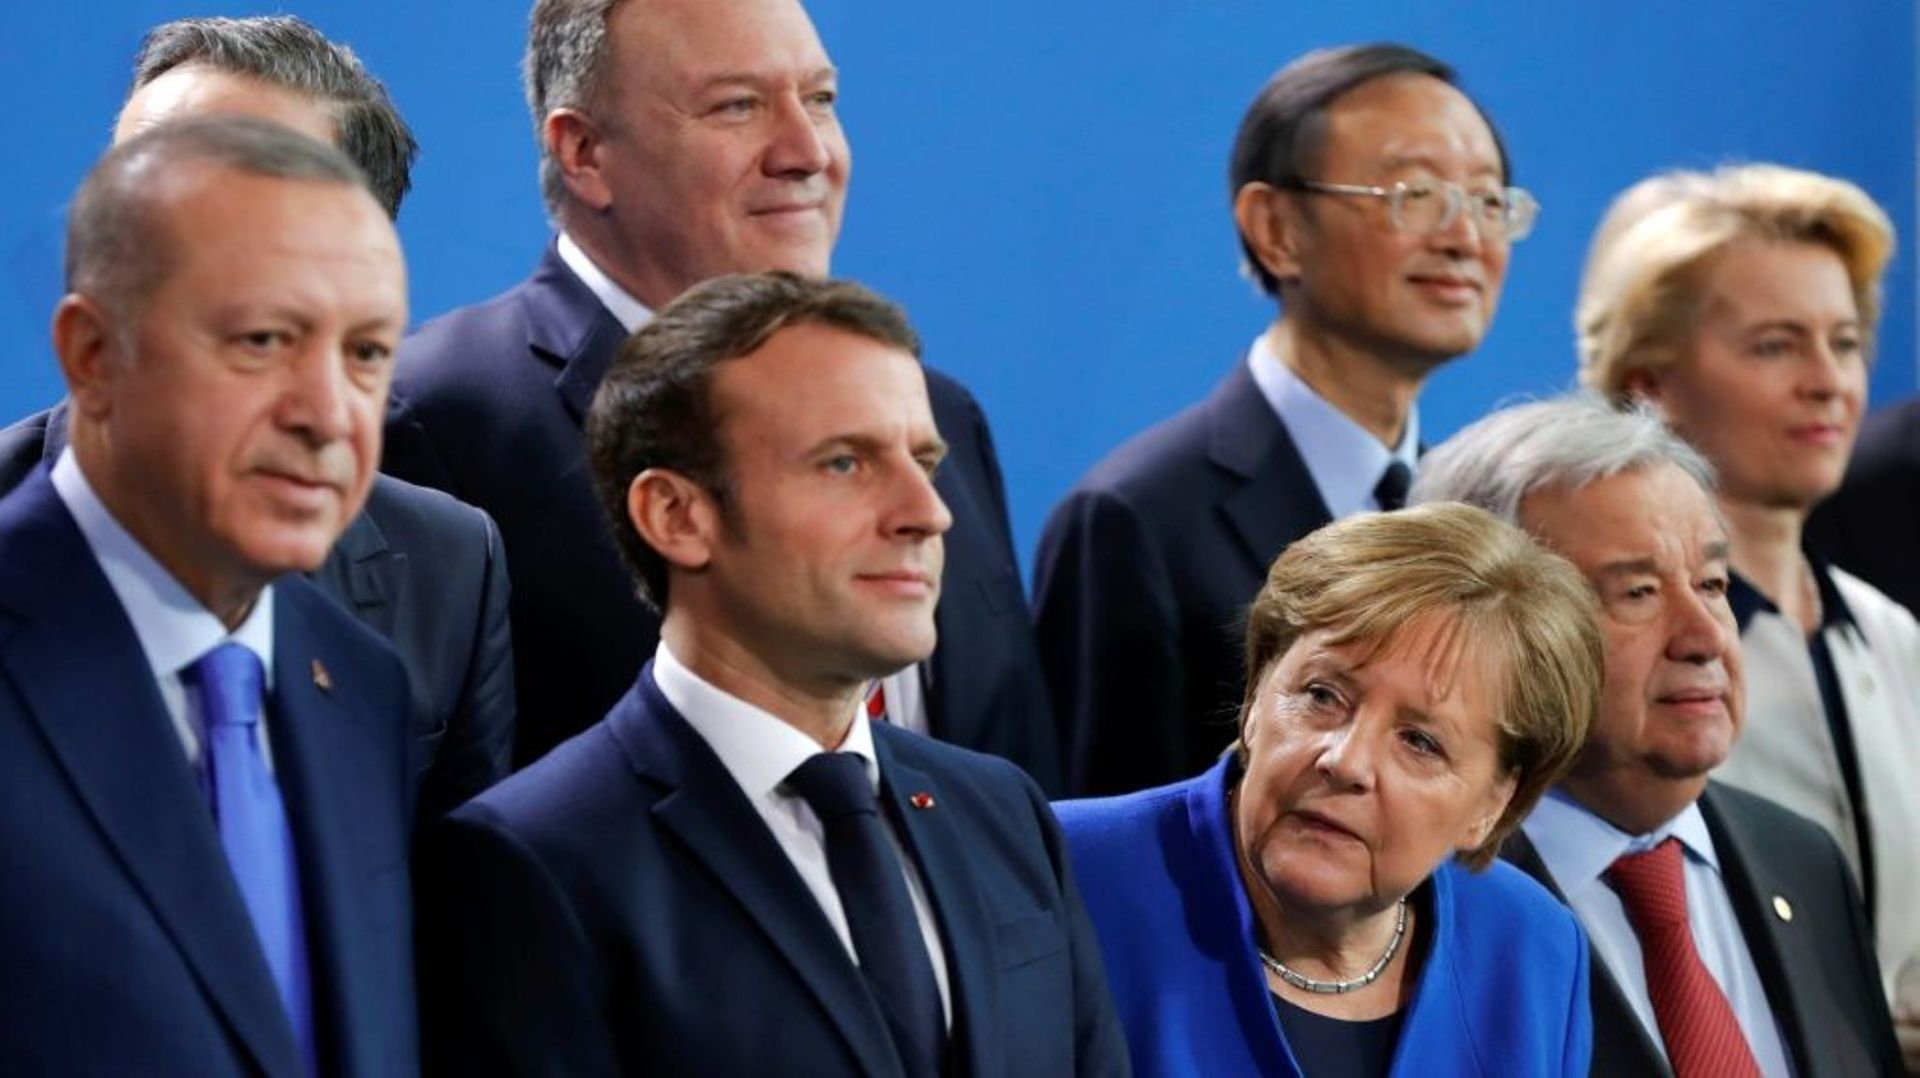 Le chef de la diplomatie américaine Mike Pompeo, au centre du second rang derrière le président turc Recep Tayyip Erdogan, le président français Emmanuel Macron et la chancelière allemande Angela Merkel lors d'un sommet sur la Libye à Berlin le 19 janvier